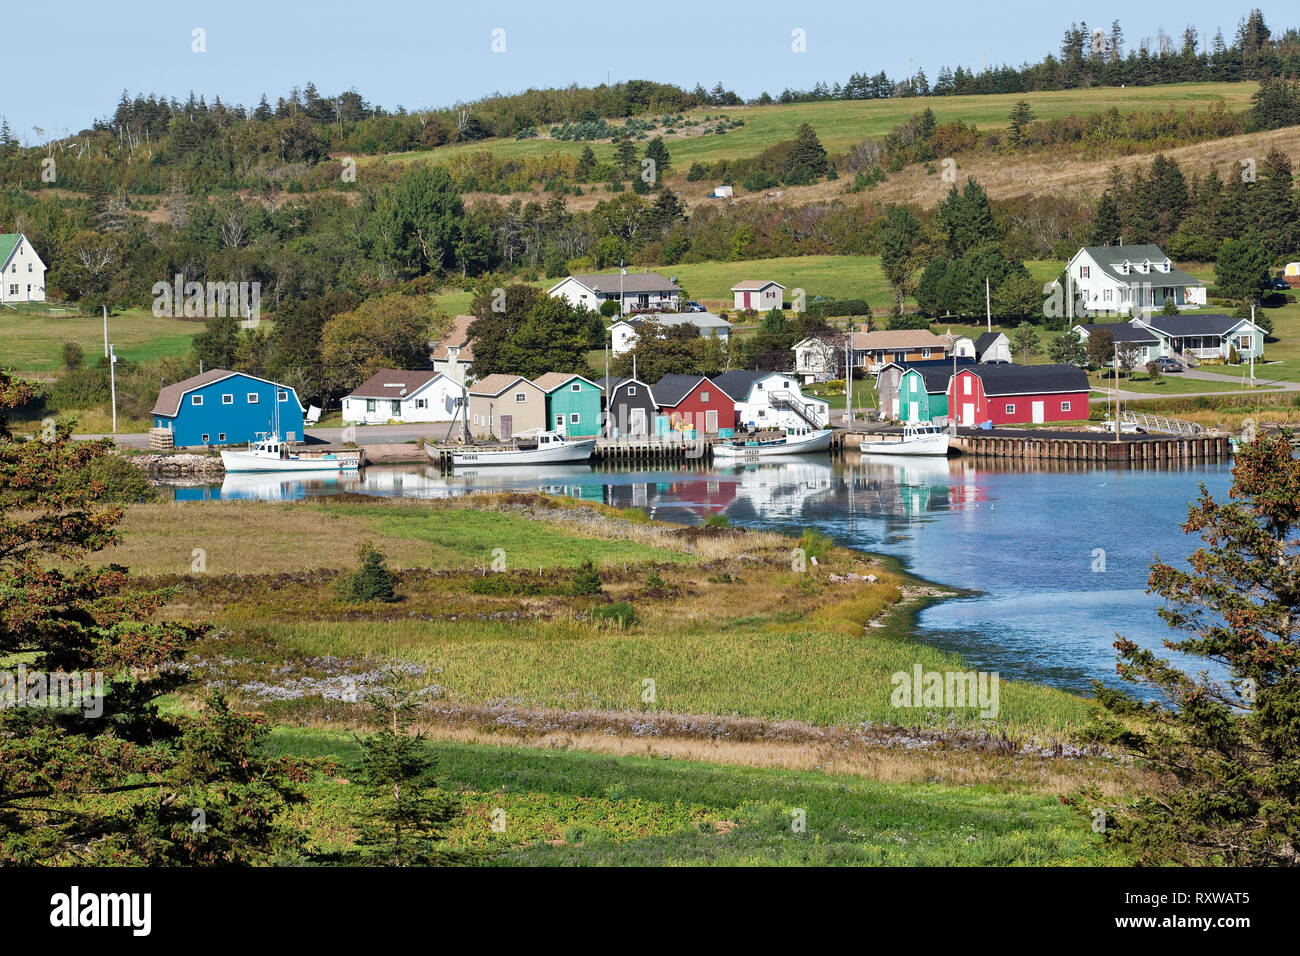 Quai et rangée de cabanes multicolores, juste à l'extérieur de la rivière des Français sur la rive de la baie New London, Prince Edward Island, Canada Banque D'Images